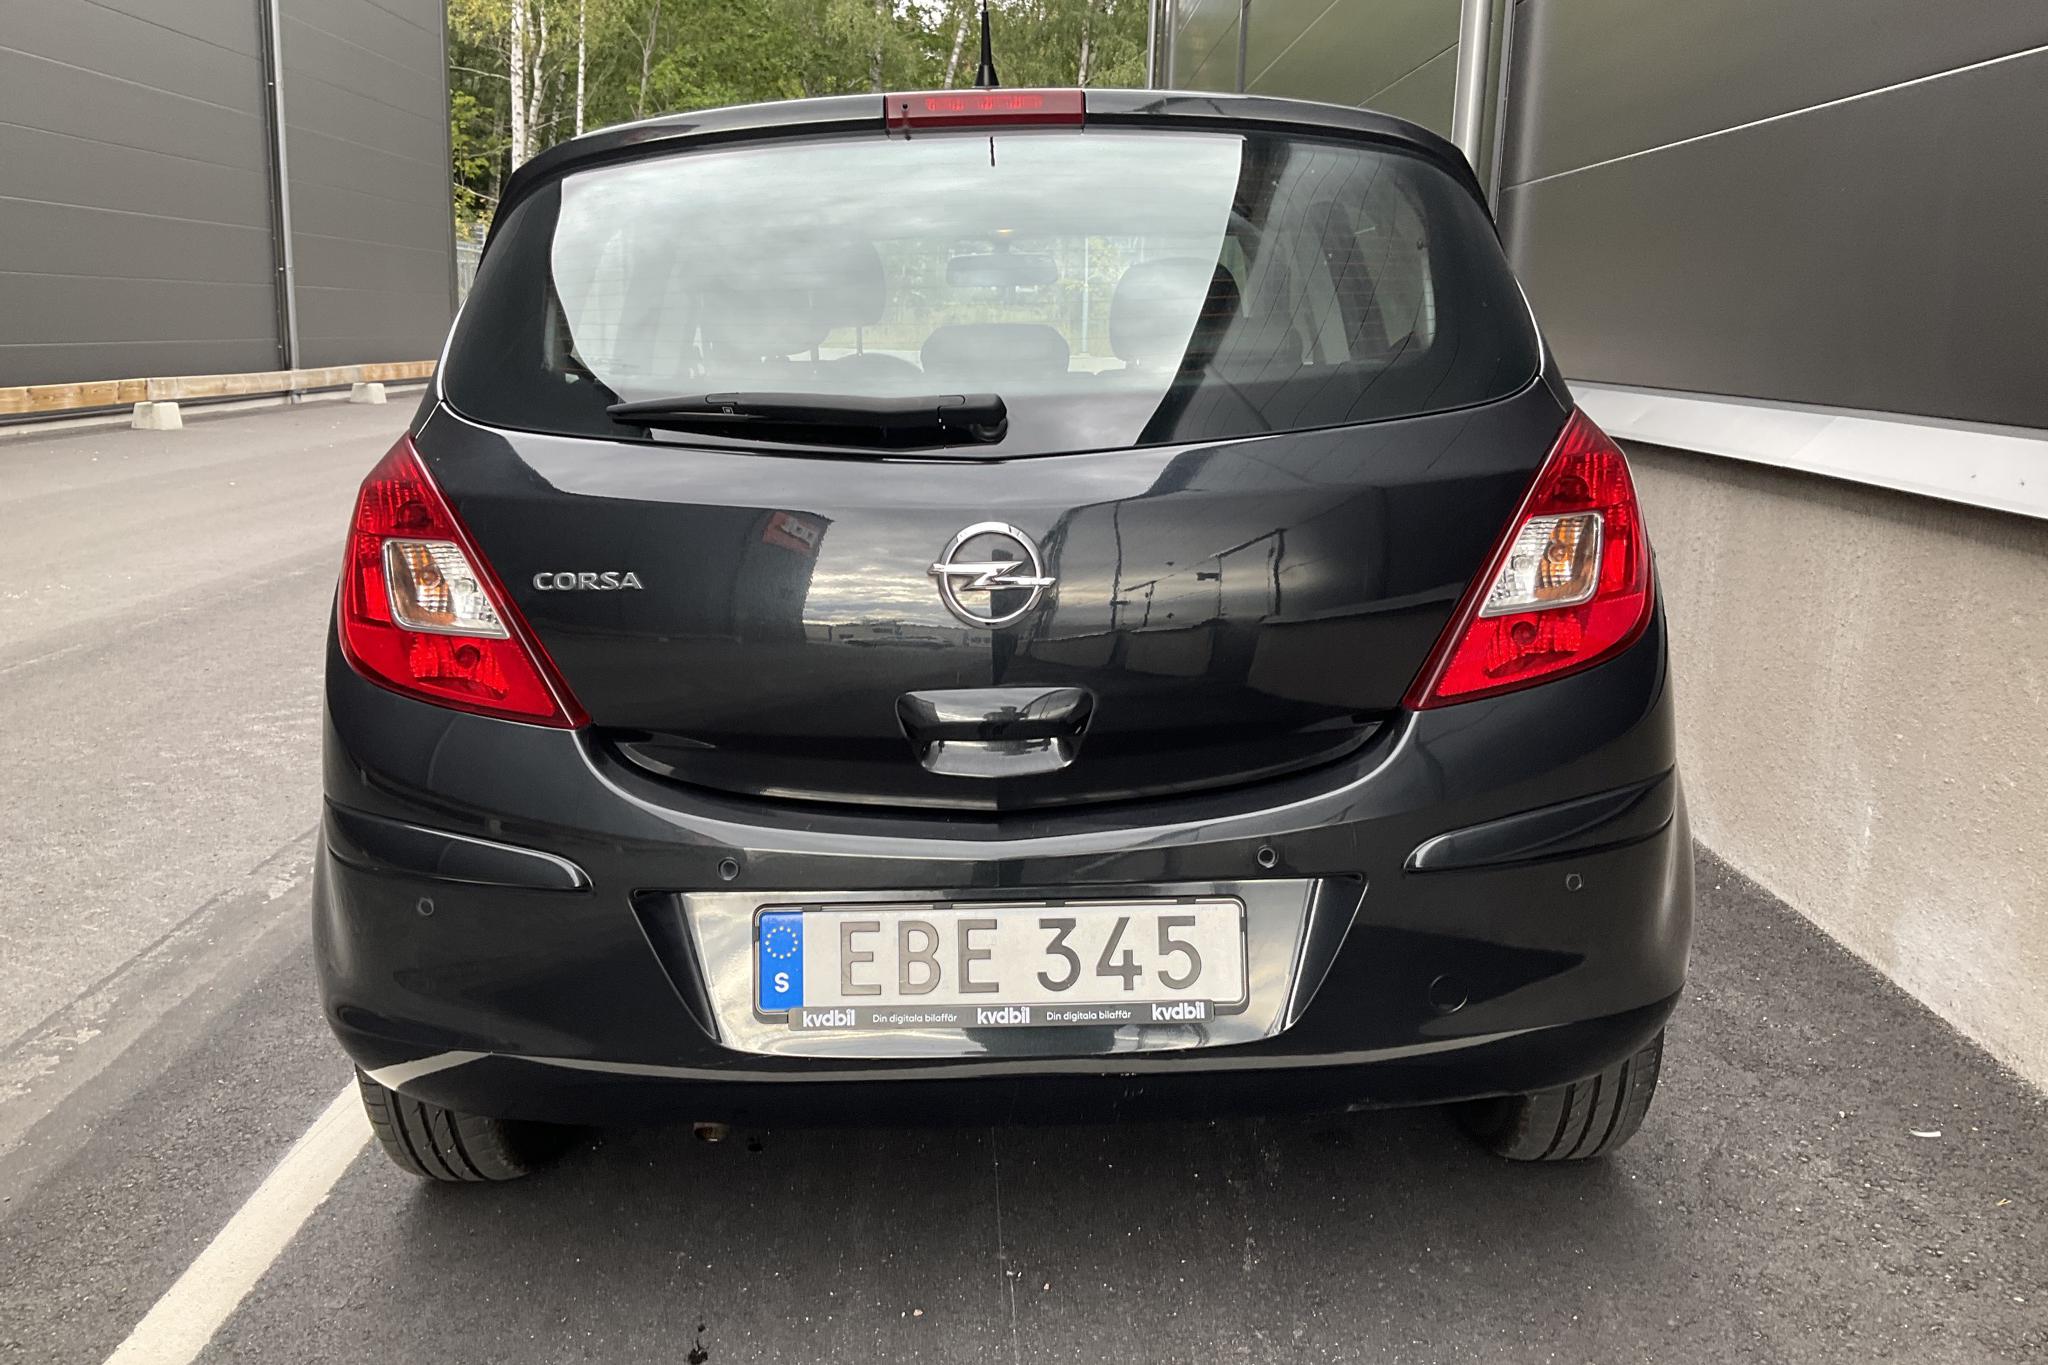 Opel Corsa 1.2 Twinport 5dr (85hk) - 10 753 mil - Manuell - svart - 2014